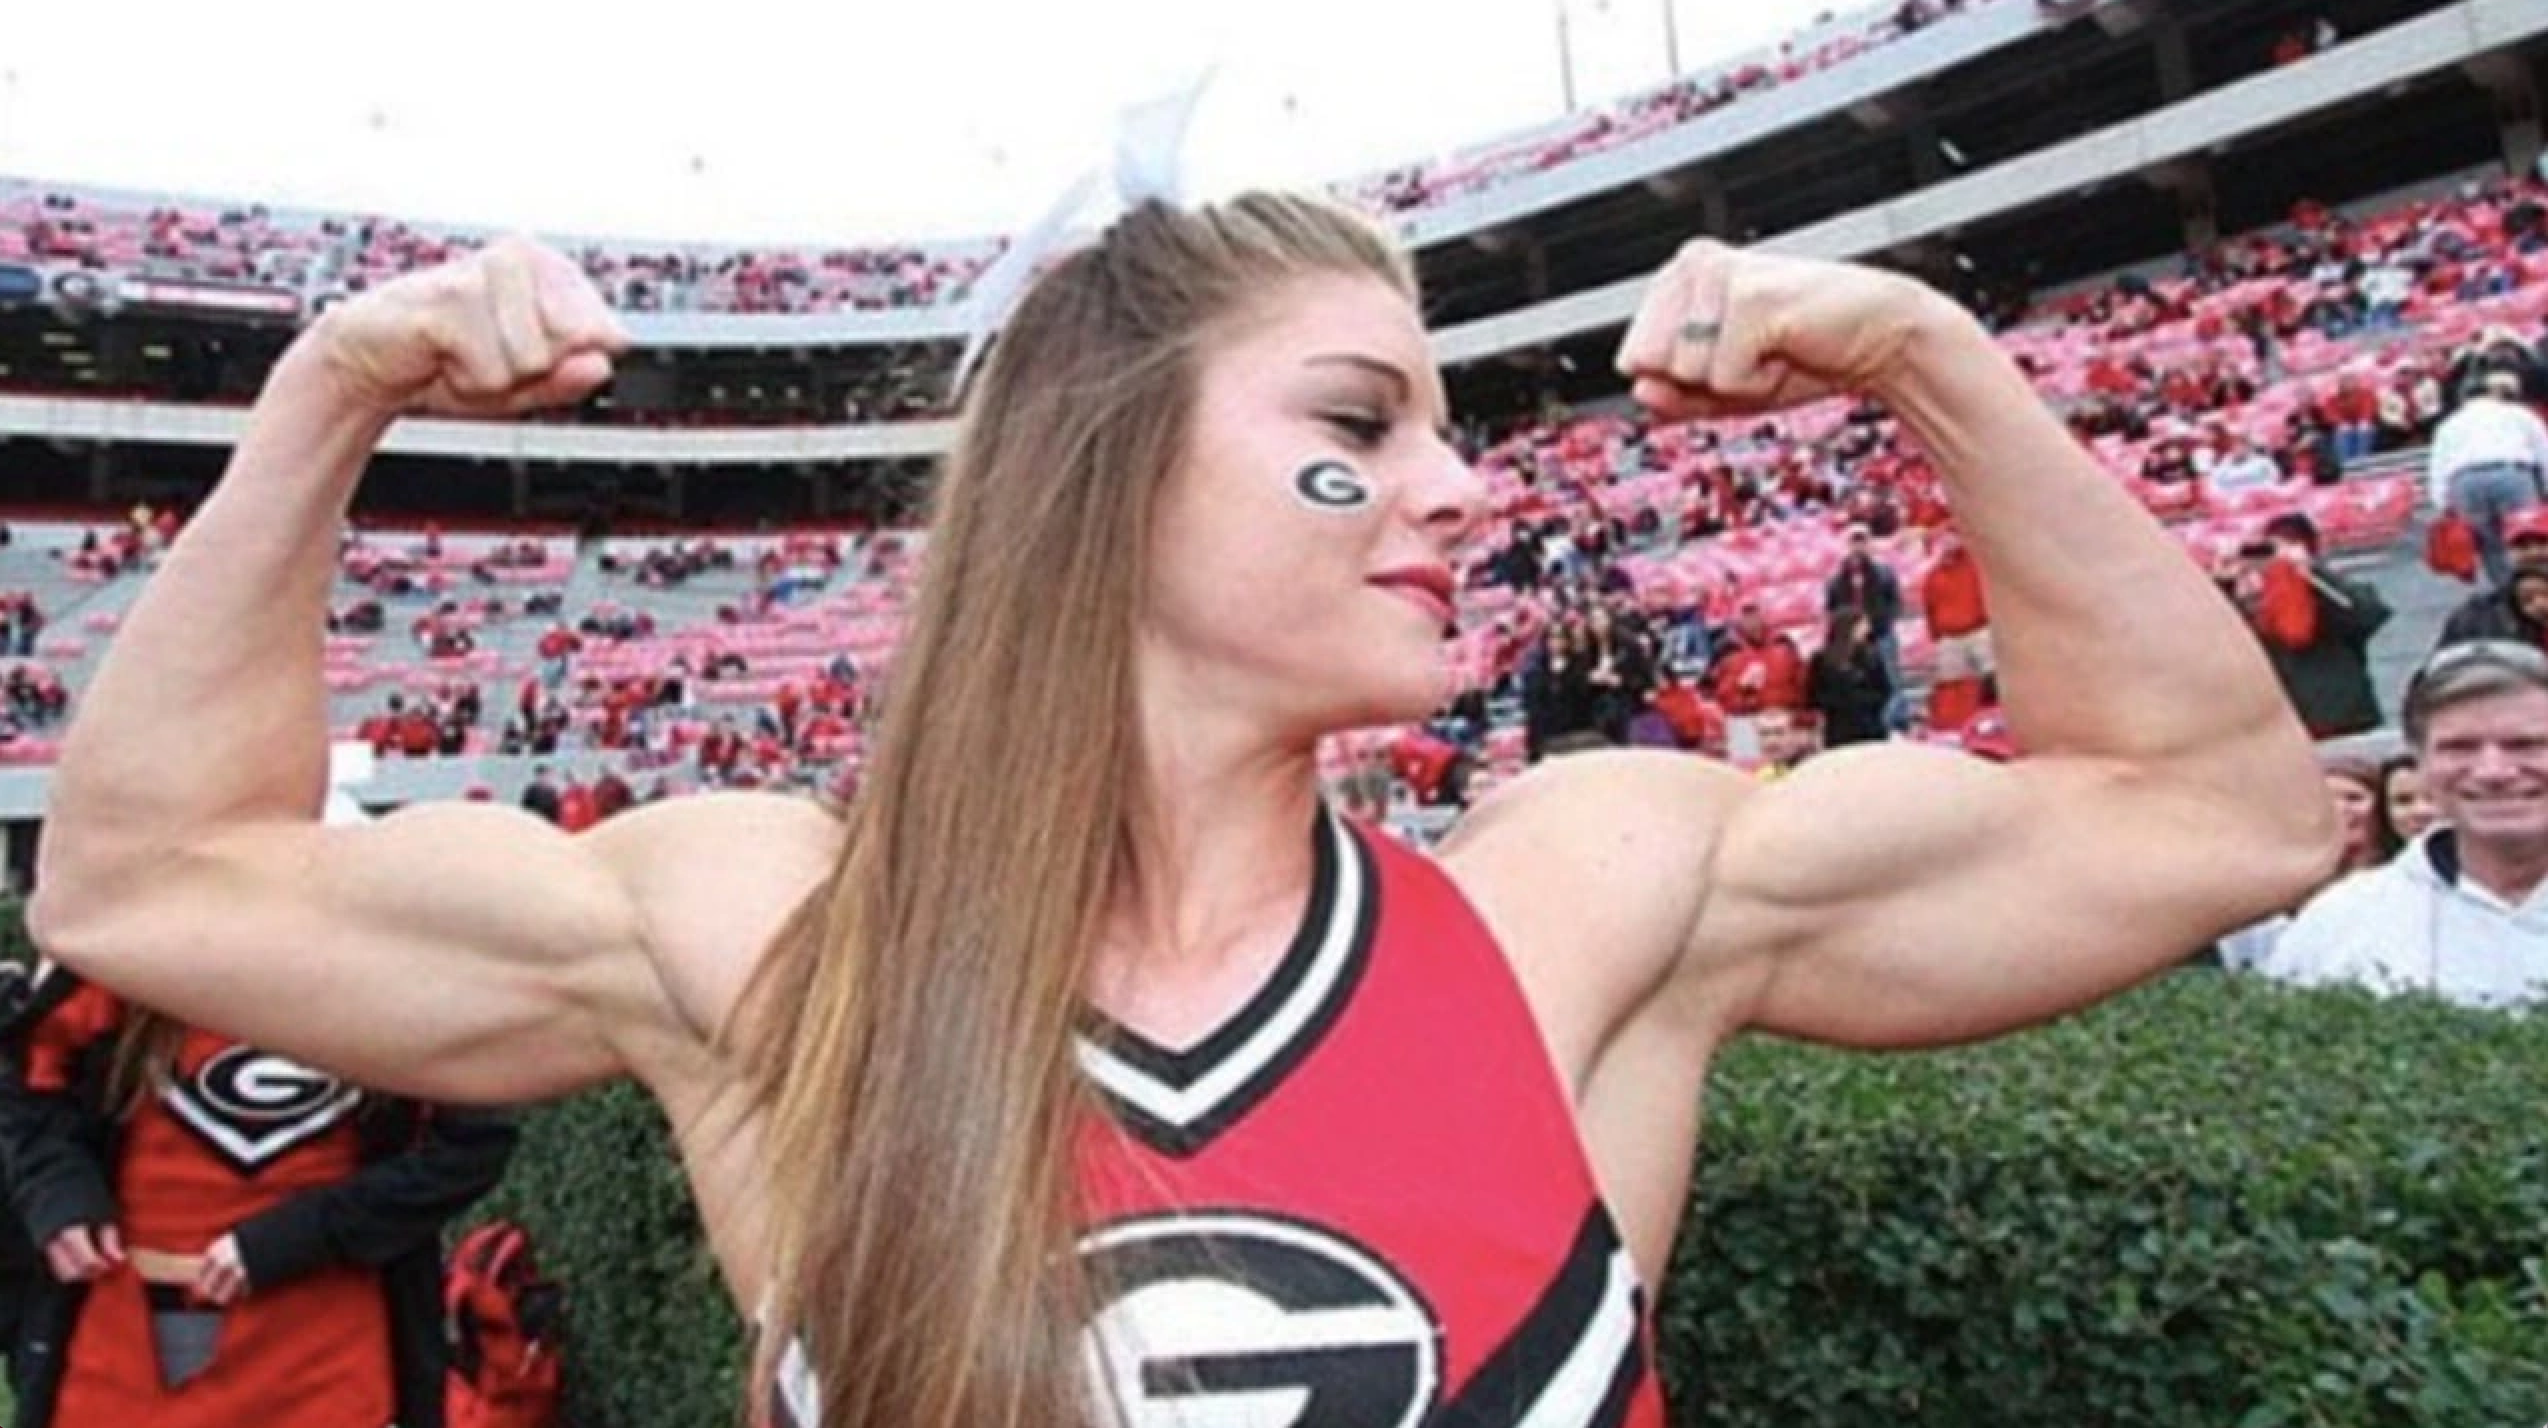 Anna wurde einst als „stärkste Cheerleaderin der Welt“ bezeichnet, als im Jahr 2012 ein Bild ihrer beeindruckenden Arme im Internet verbreitete